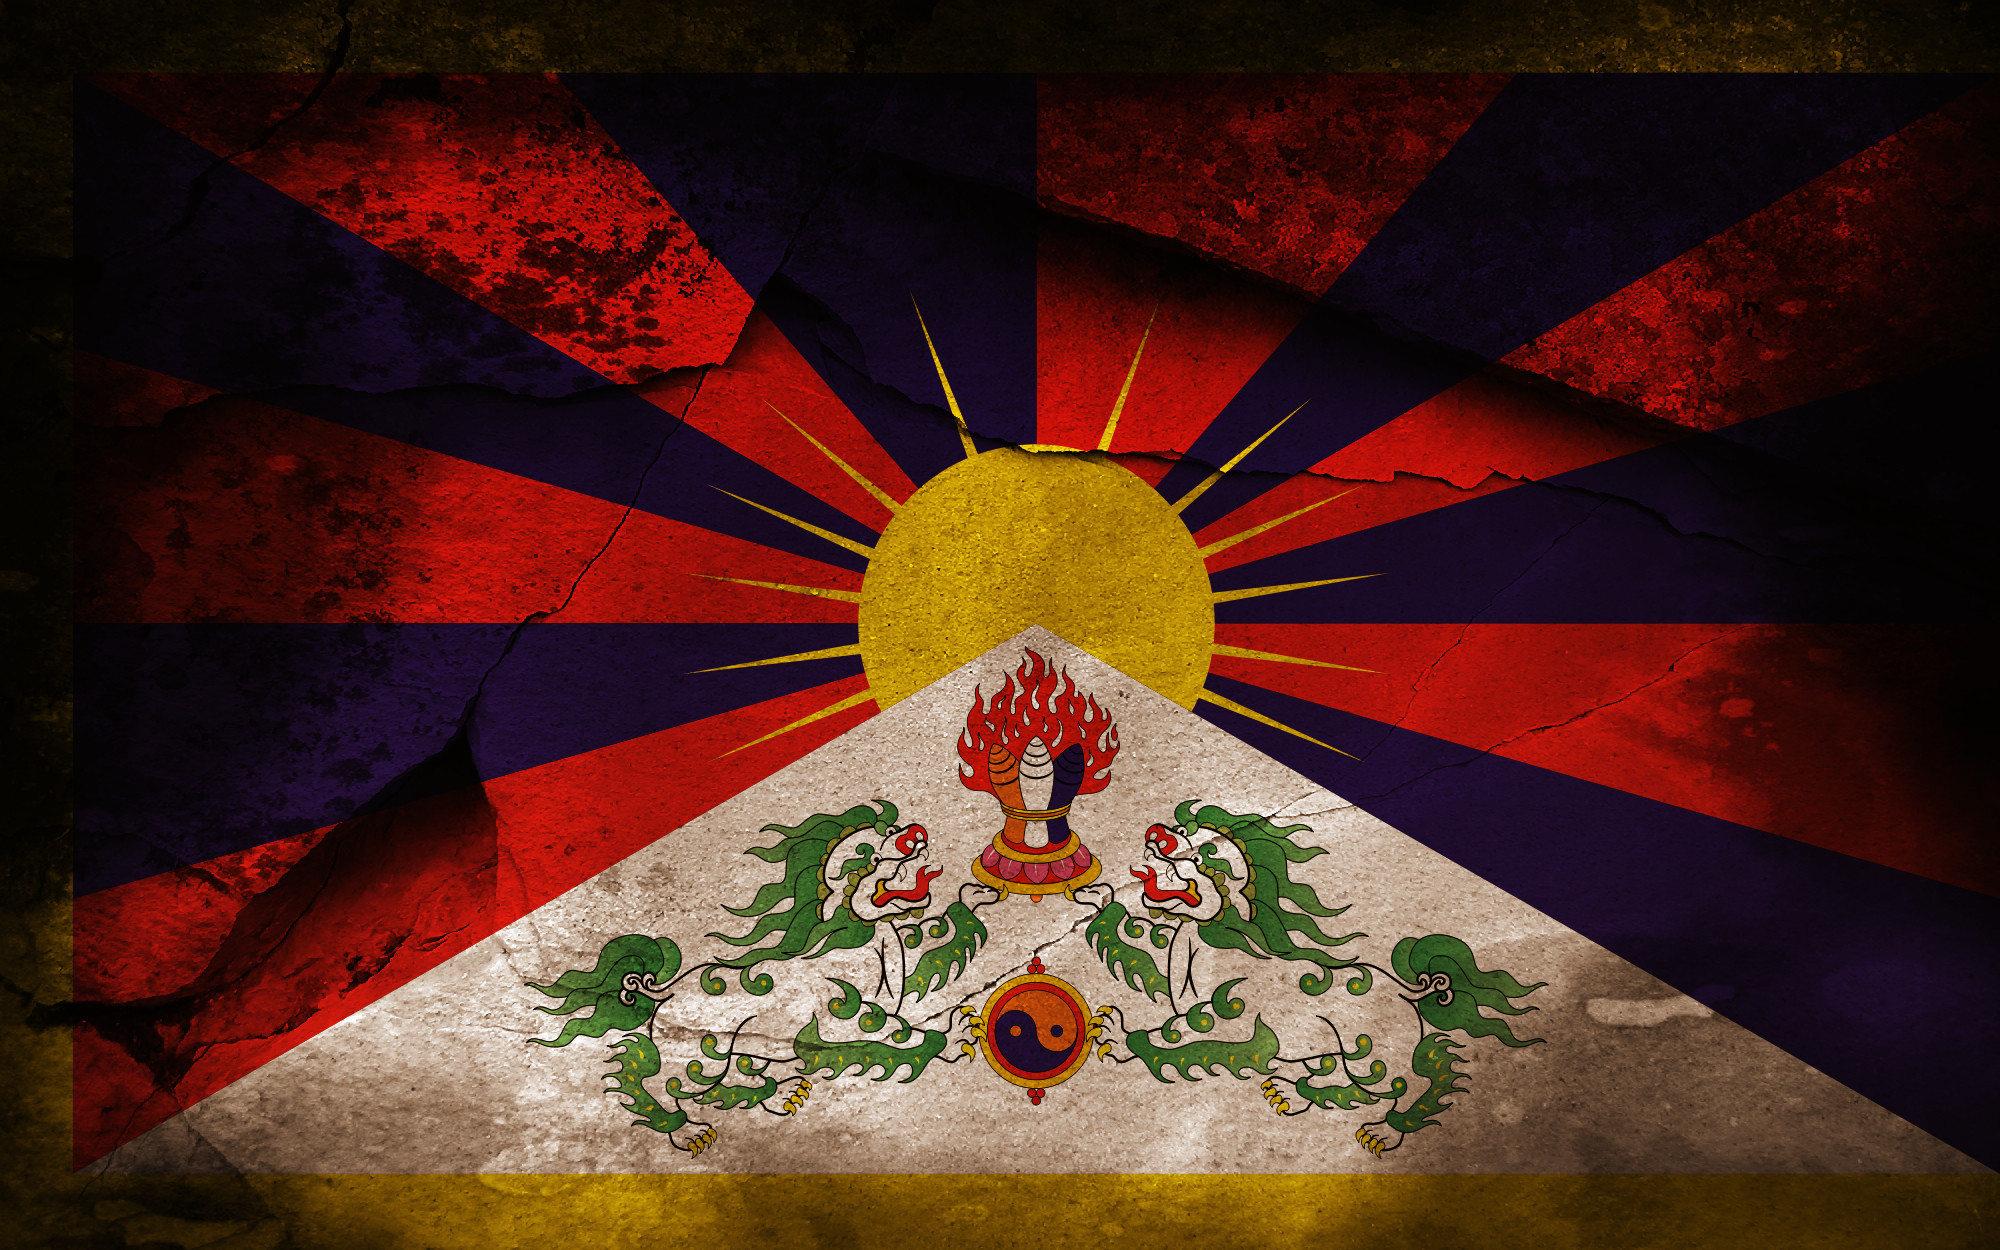 Tibet Wallpapers Hd Hd Wallpapers Pinterest Hd Wallpaper And Wallpaper 2000x1250